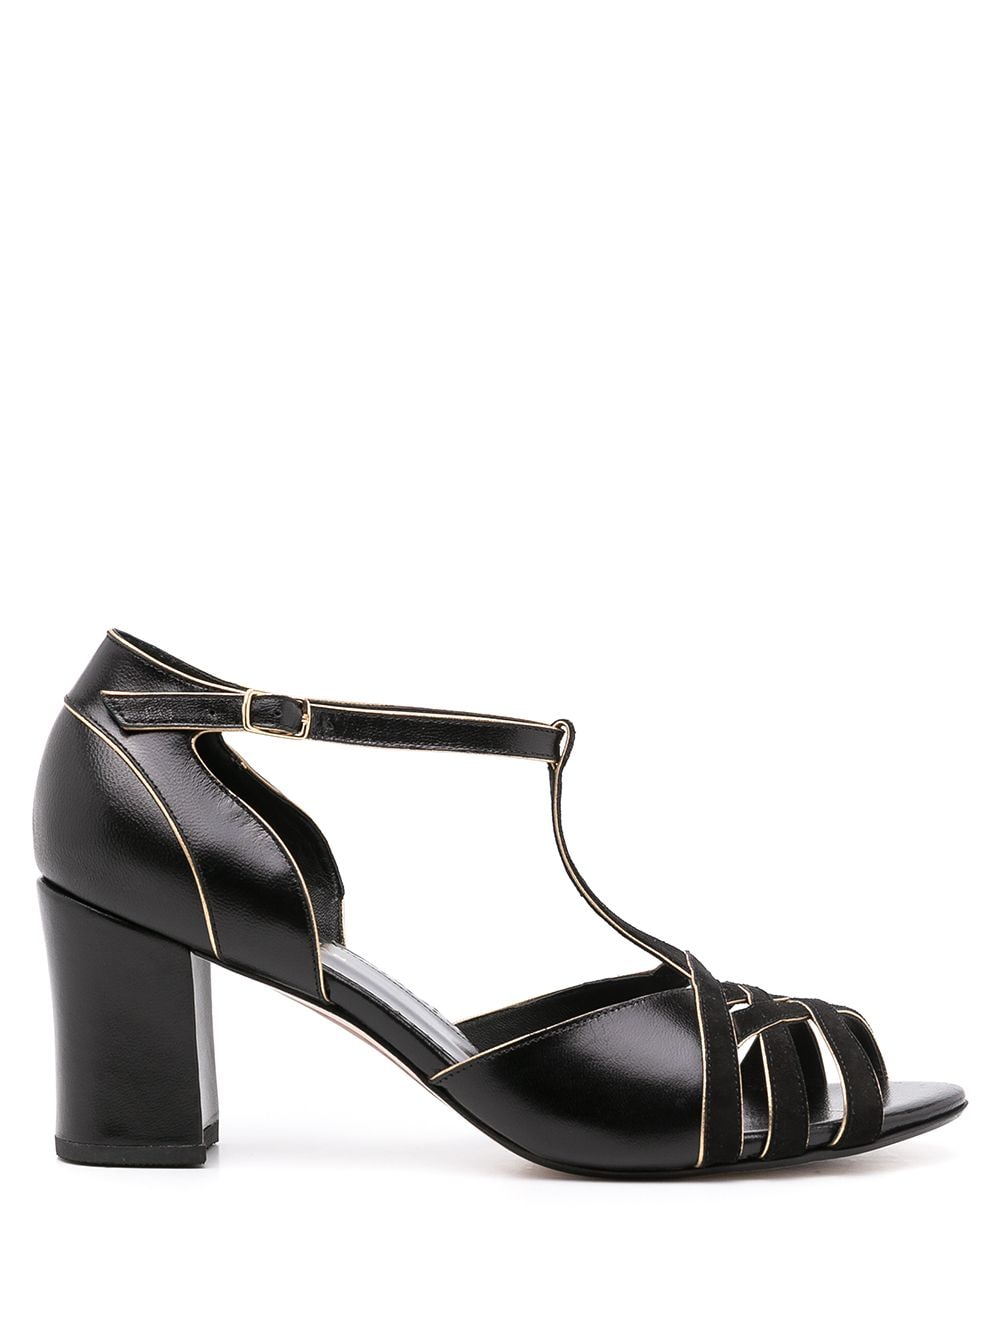 Sarah Chofakian Chiara leather sandals - Black von Sarah Chofakian